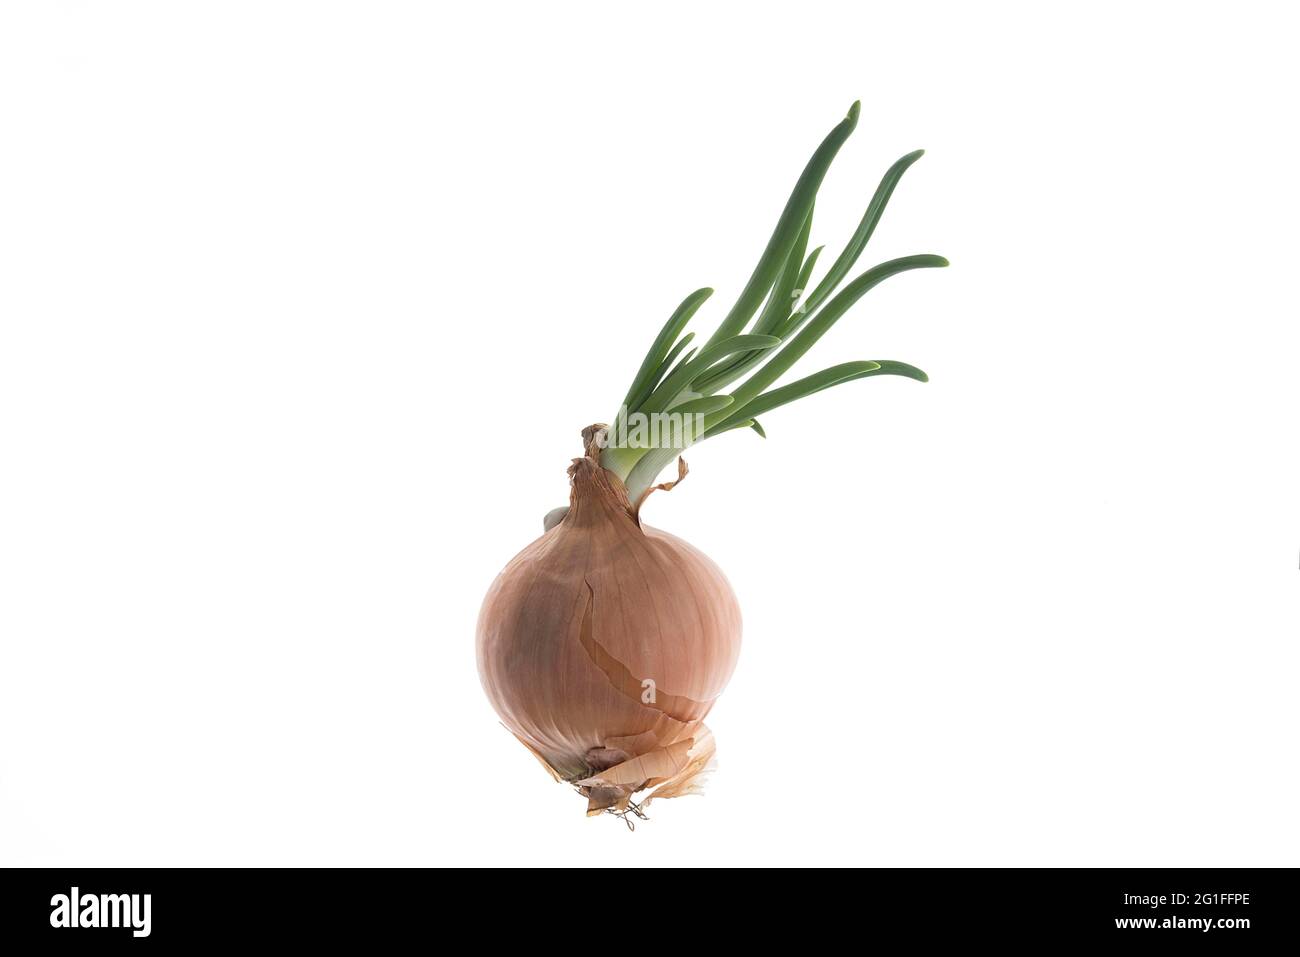 Ecracher l'oignon (Allium cesp) sur fond blanc, photo en studio, Allemagne Banque D'Images